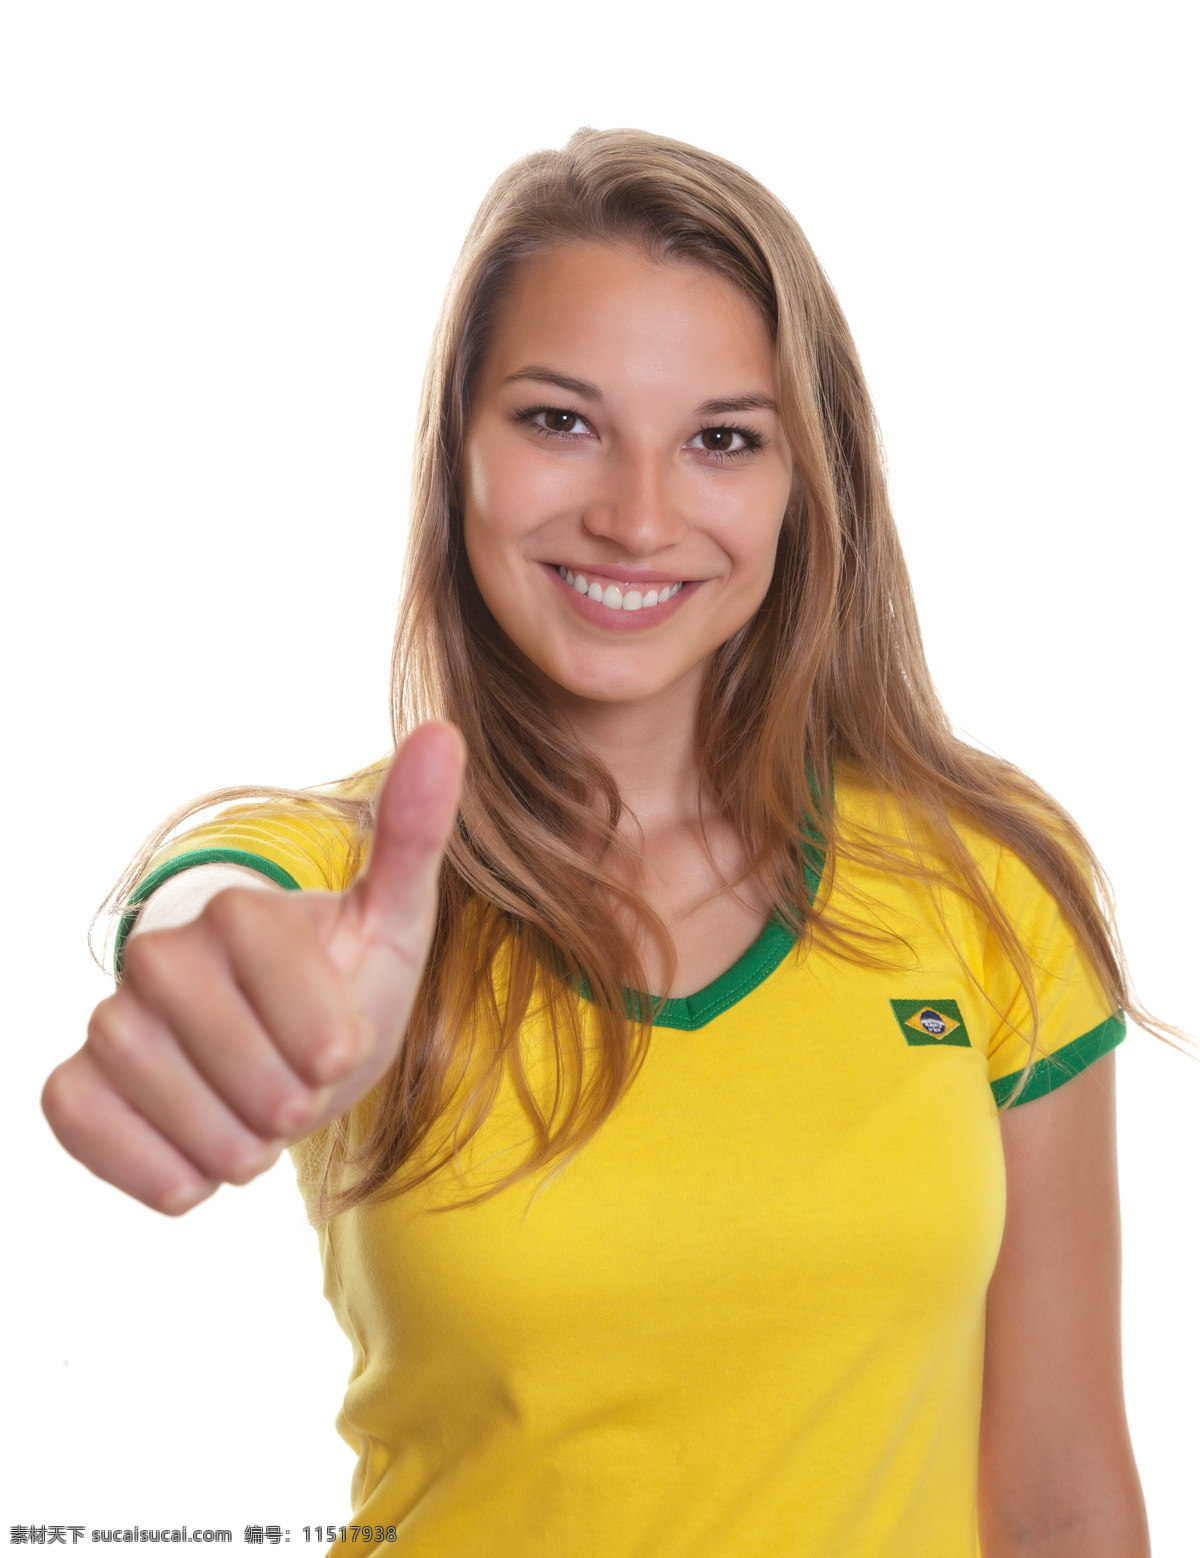 竖起 大拇指 美女 球迷 世界杯 足球 体育运动 生活百科